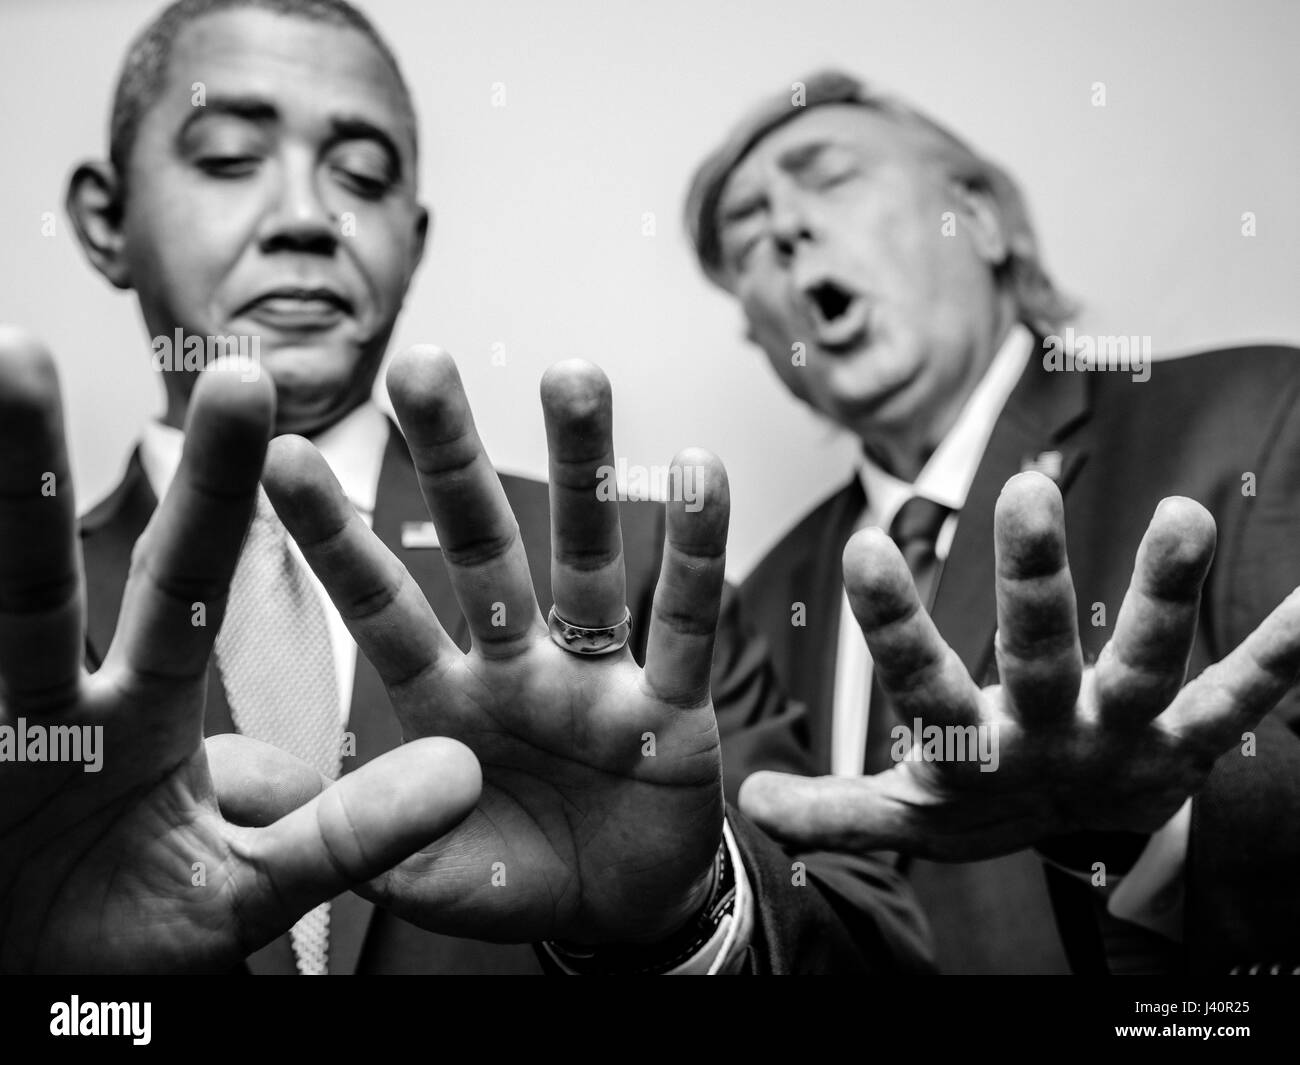 Präsident Barack Obama und Präsident Donald J Trump Lookalikes vergleichen Handgrößen um zu sehen, wer hat die größten Händen bei einem Fotoshooting in Hong Kong. Stockfoto